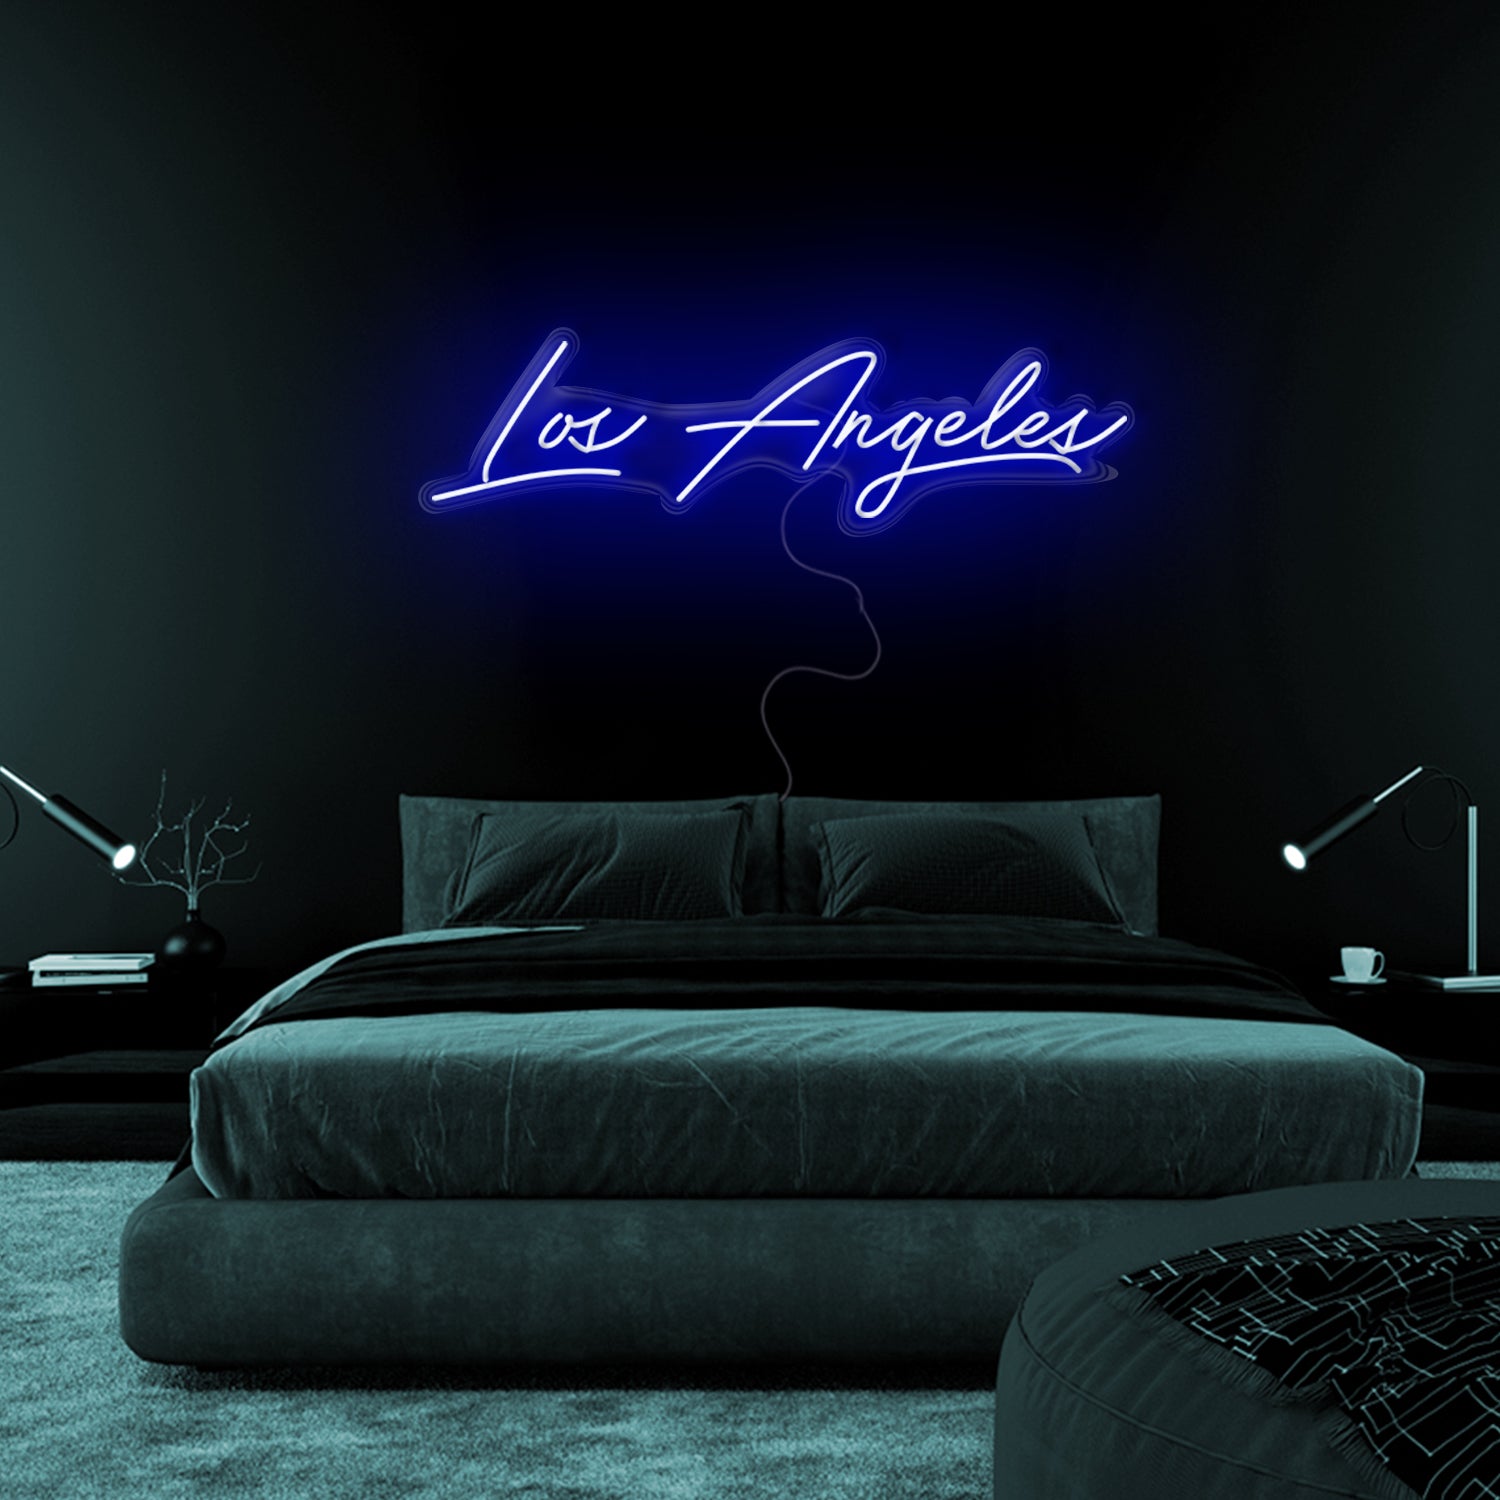 Los Angeles Neon Sign